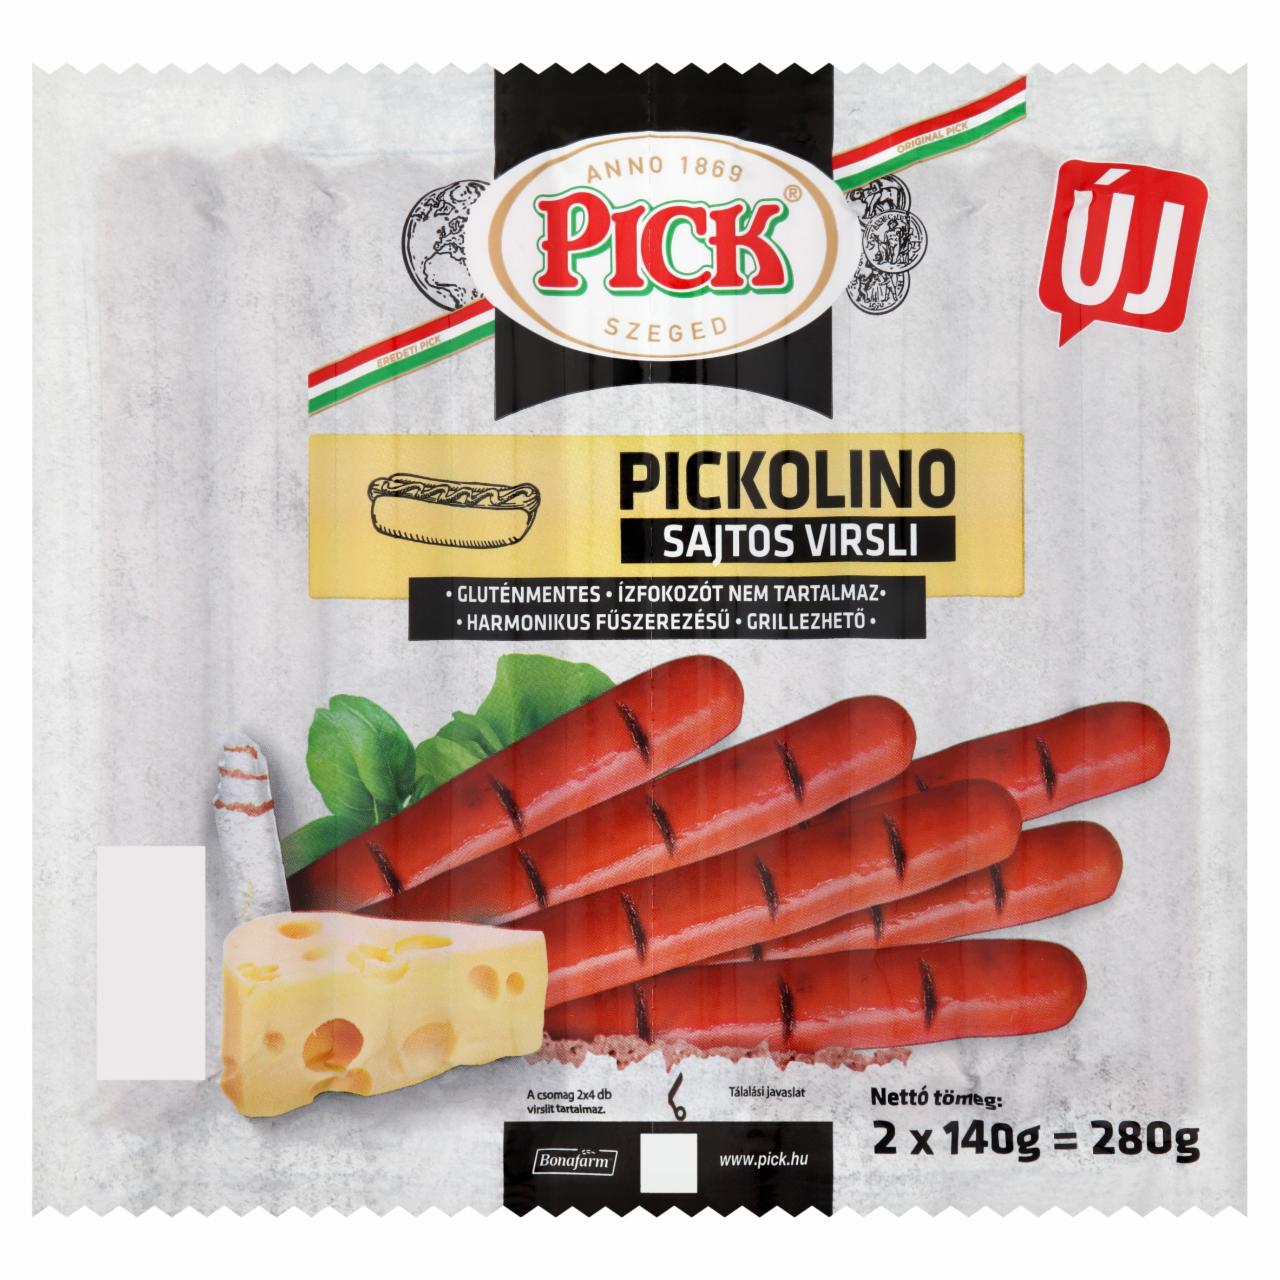 Képek - PICK Pickolino sajtos virsli sertéshúsból 2 x 140 g (280 g)